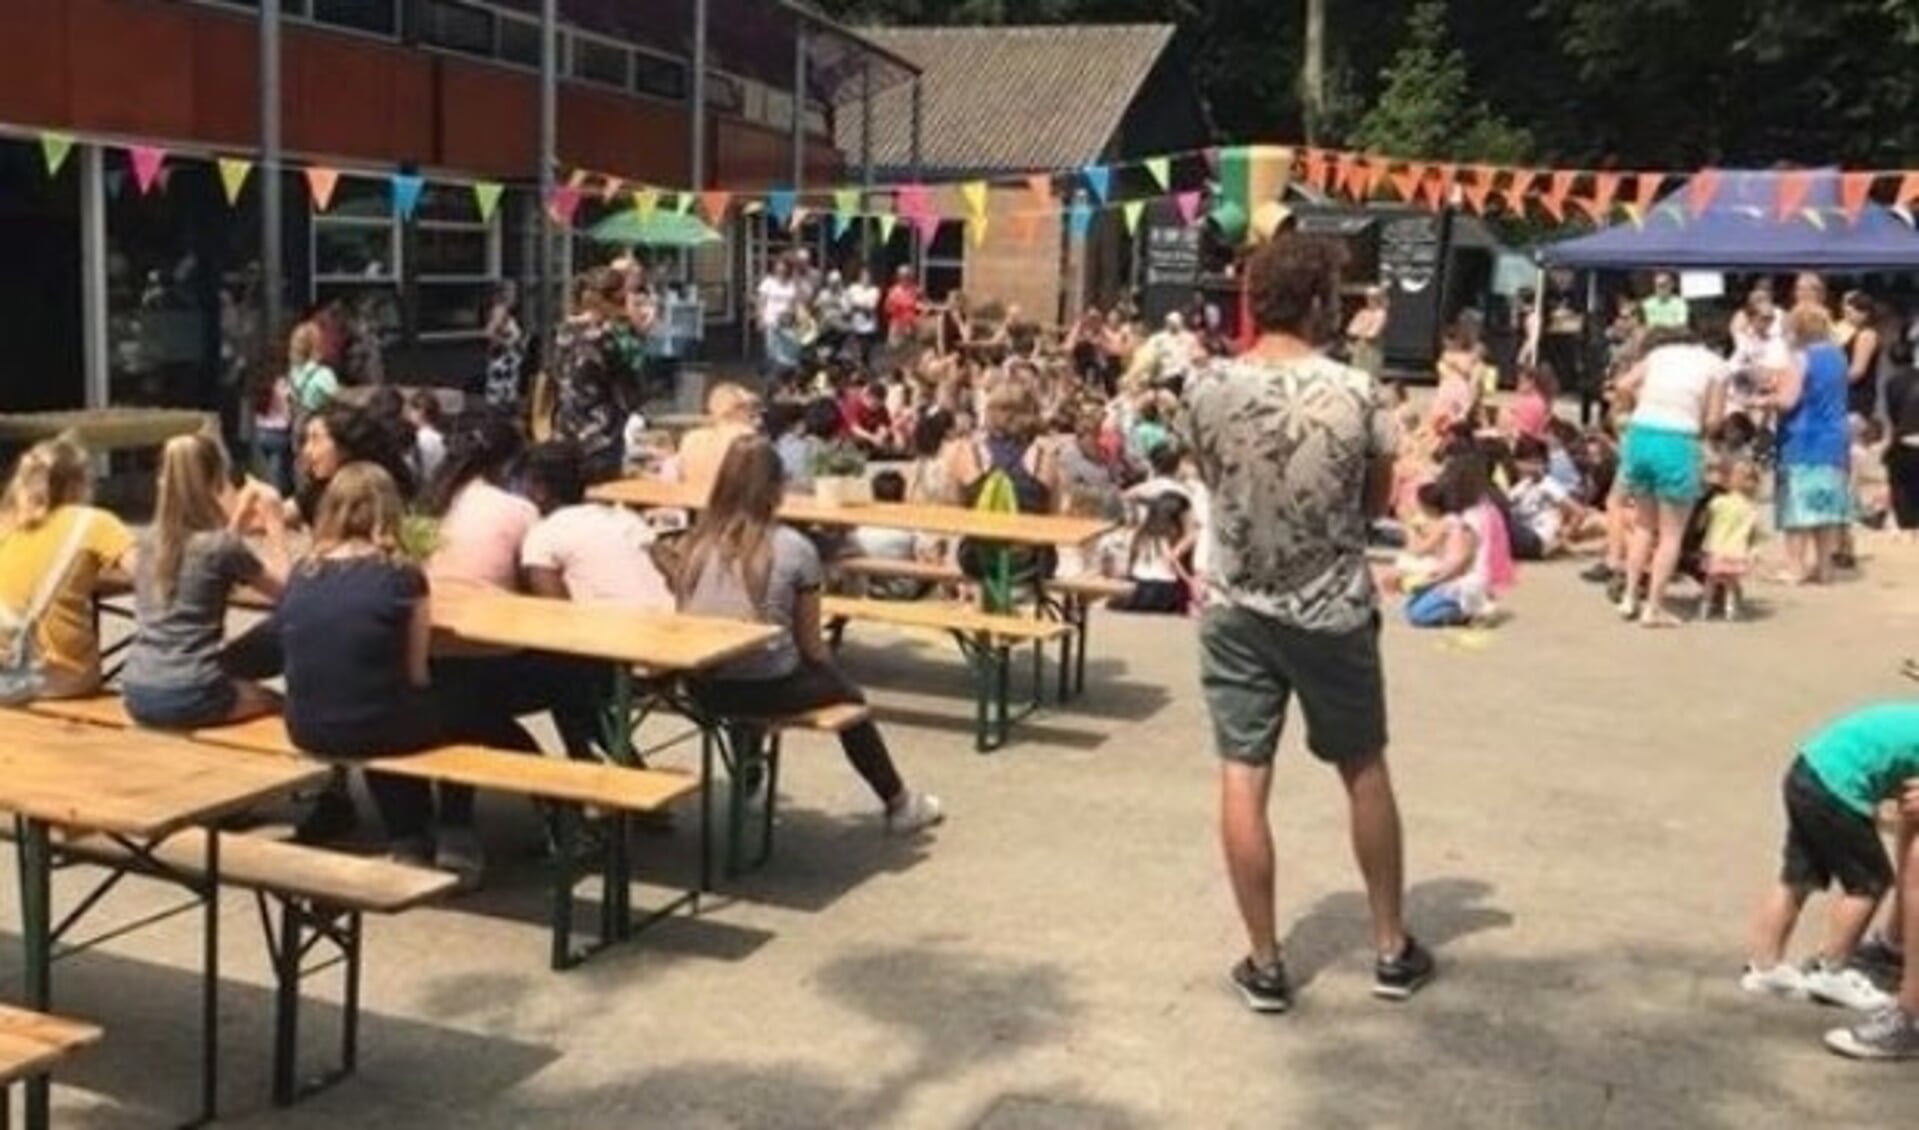 De school heeft op vrijdag 6 juli bij het ingaan van de vakantie met een foodtruck festival al afscheid genomen van de naam Touwladder. 